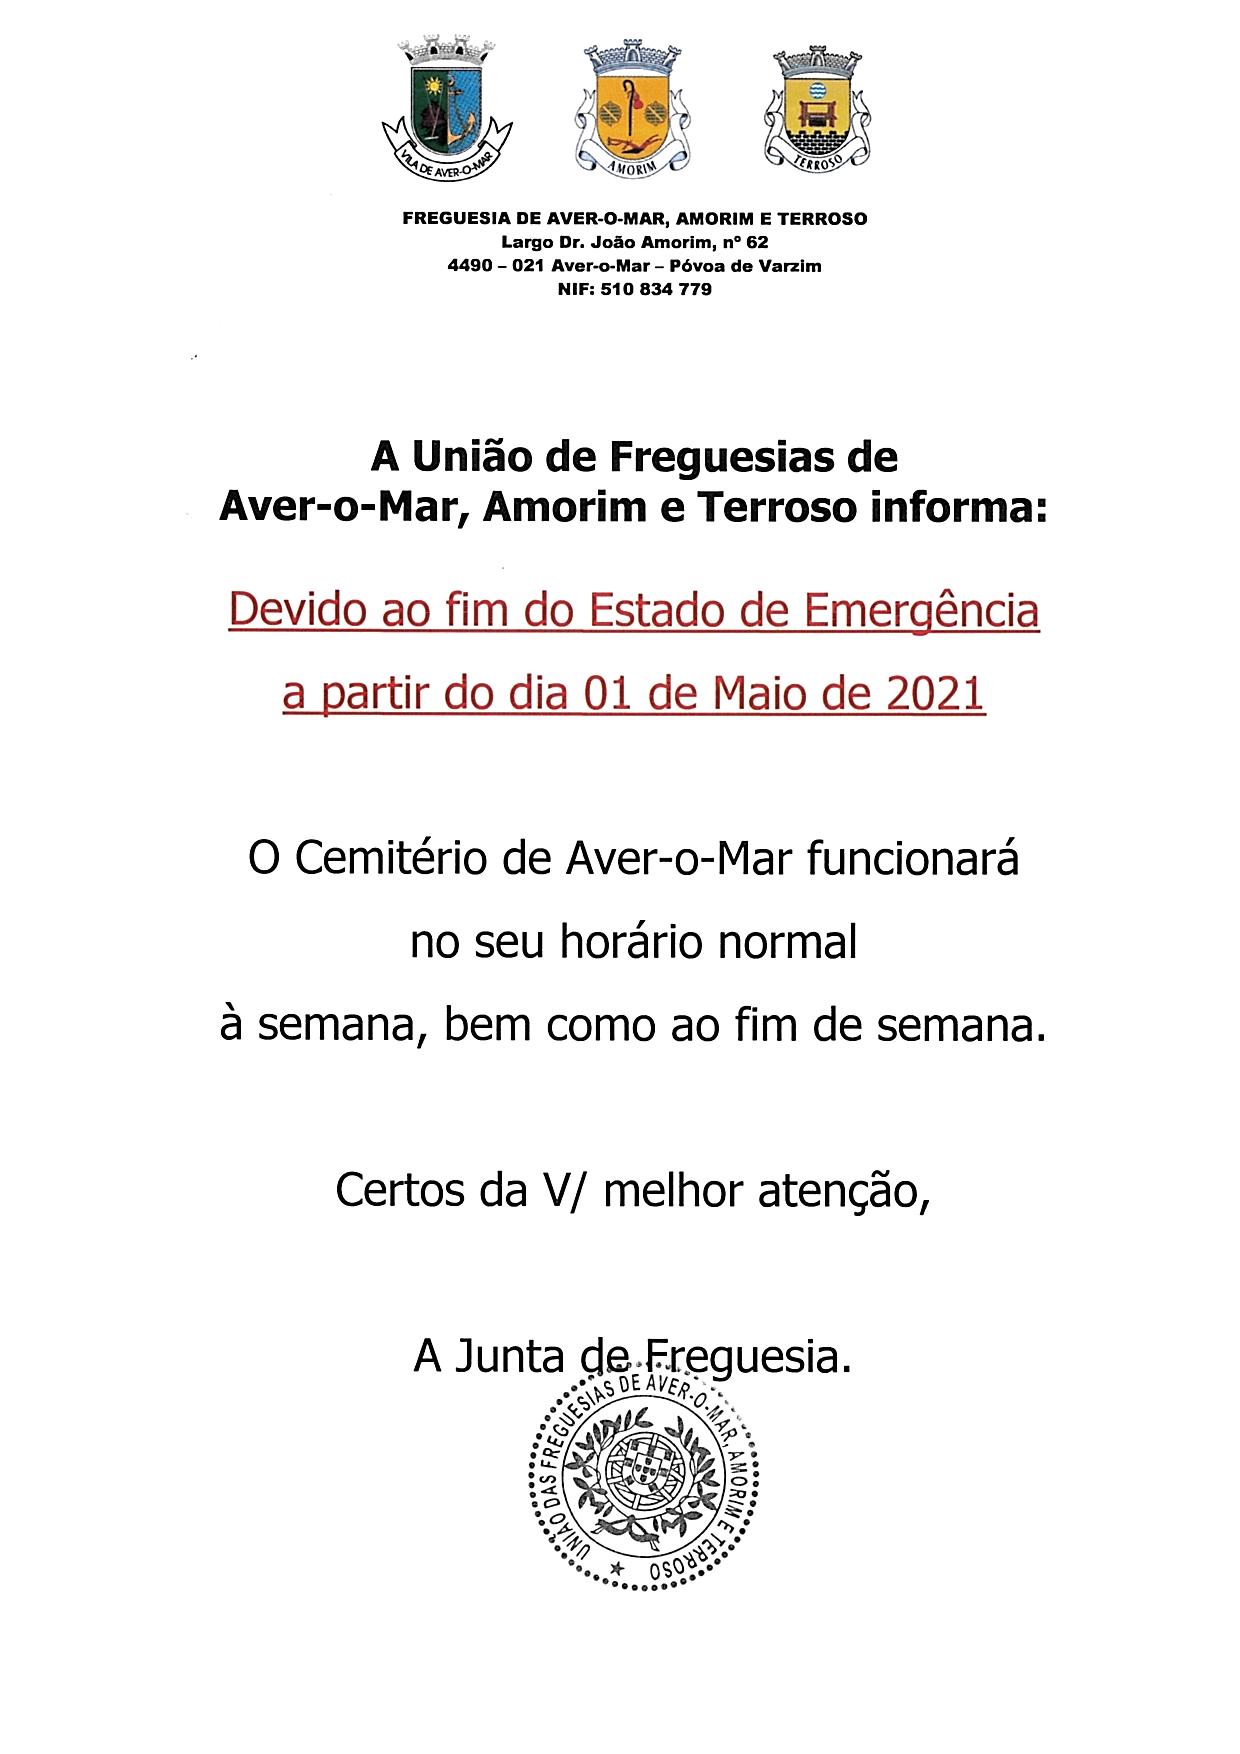 HORÁRIO DE FUNCIONAMENTO DO CEMITÉRIO AVER-O-MAR